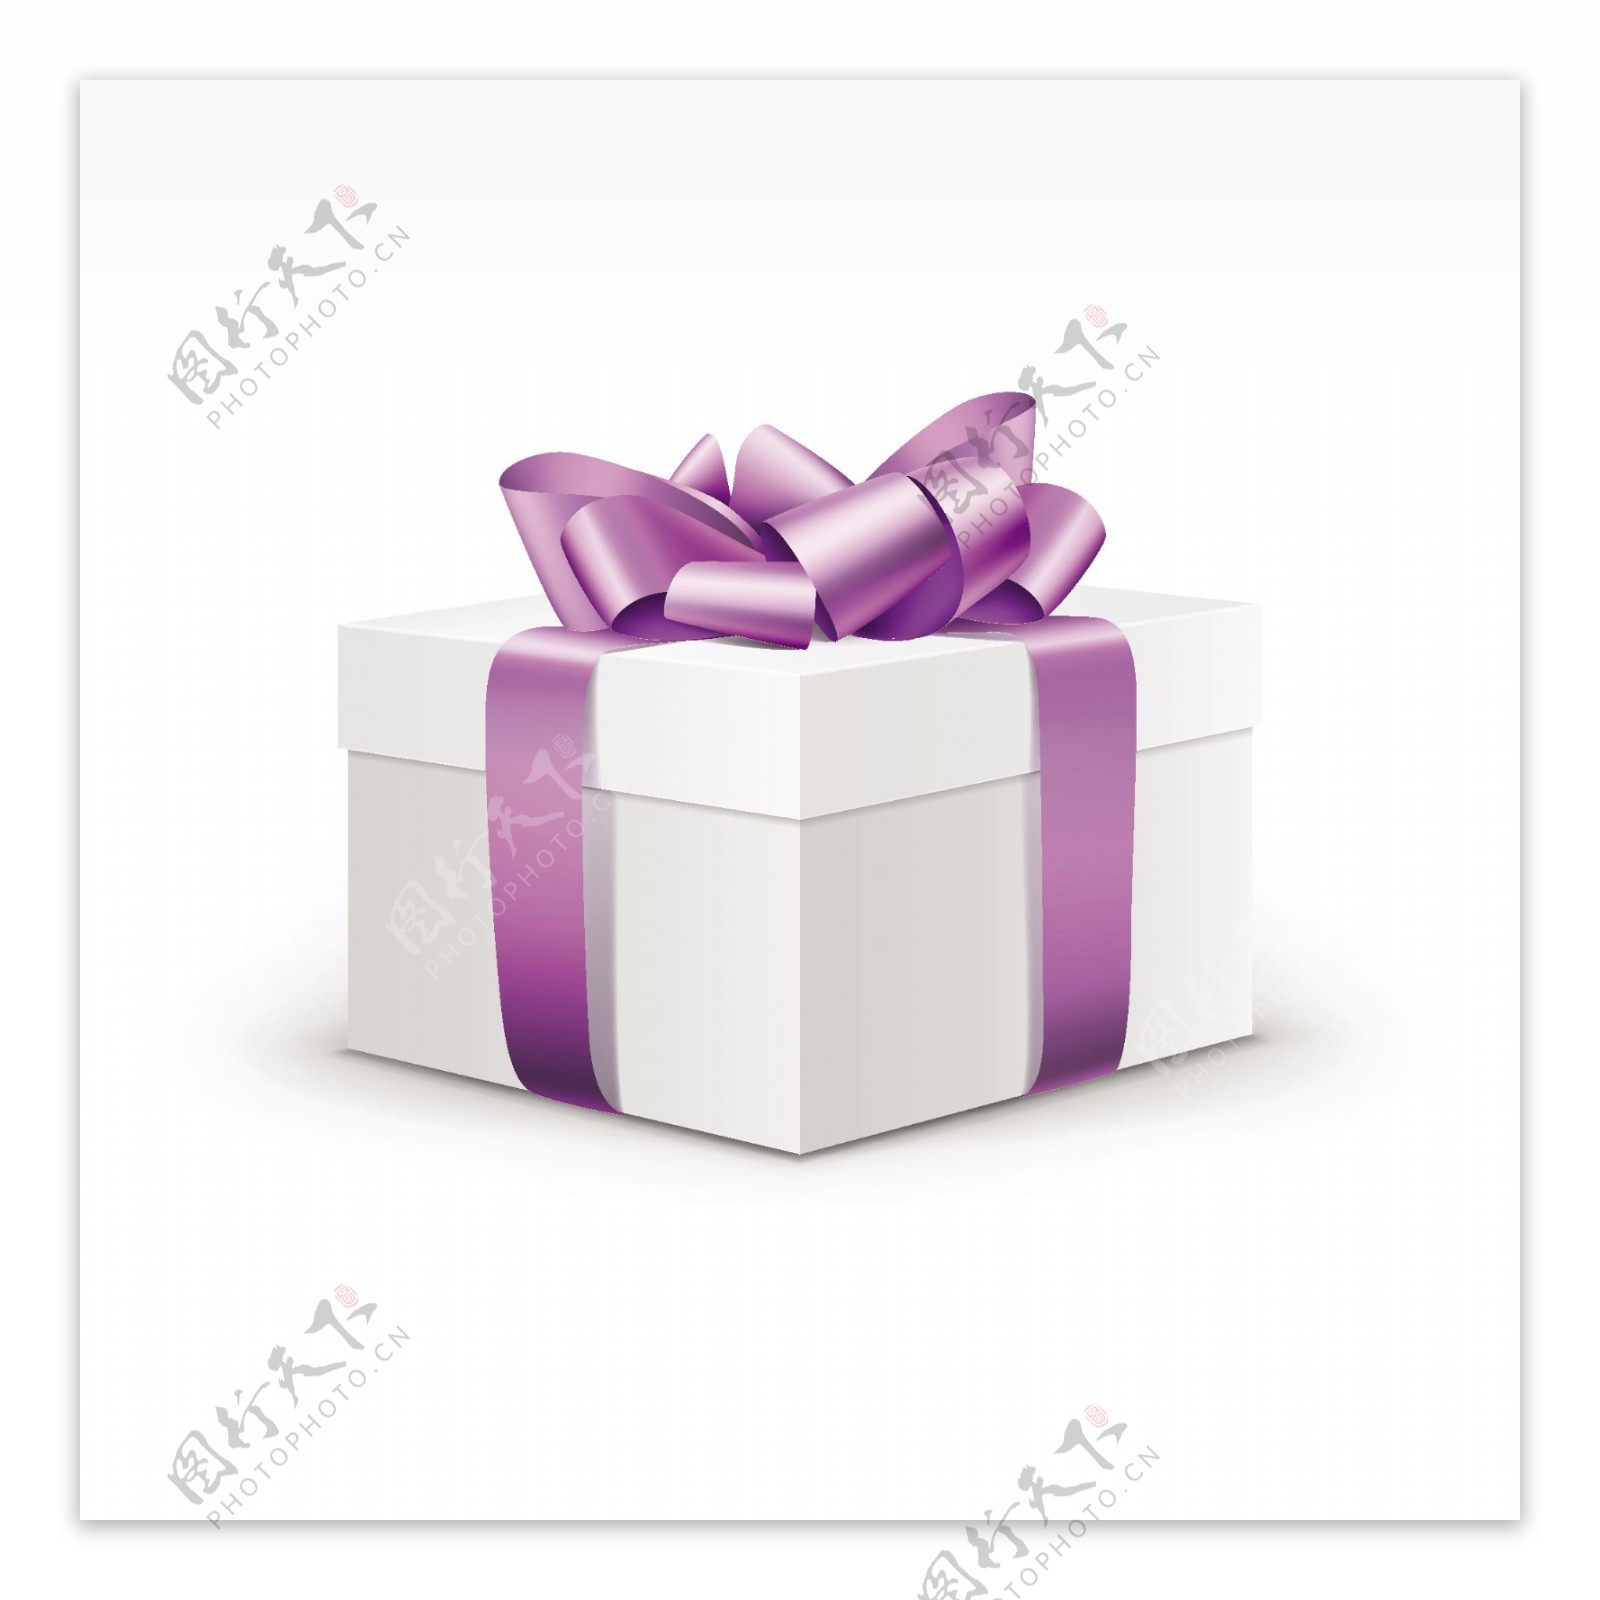 空白紫色缎带礼品盒包装矢量素材